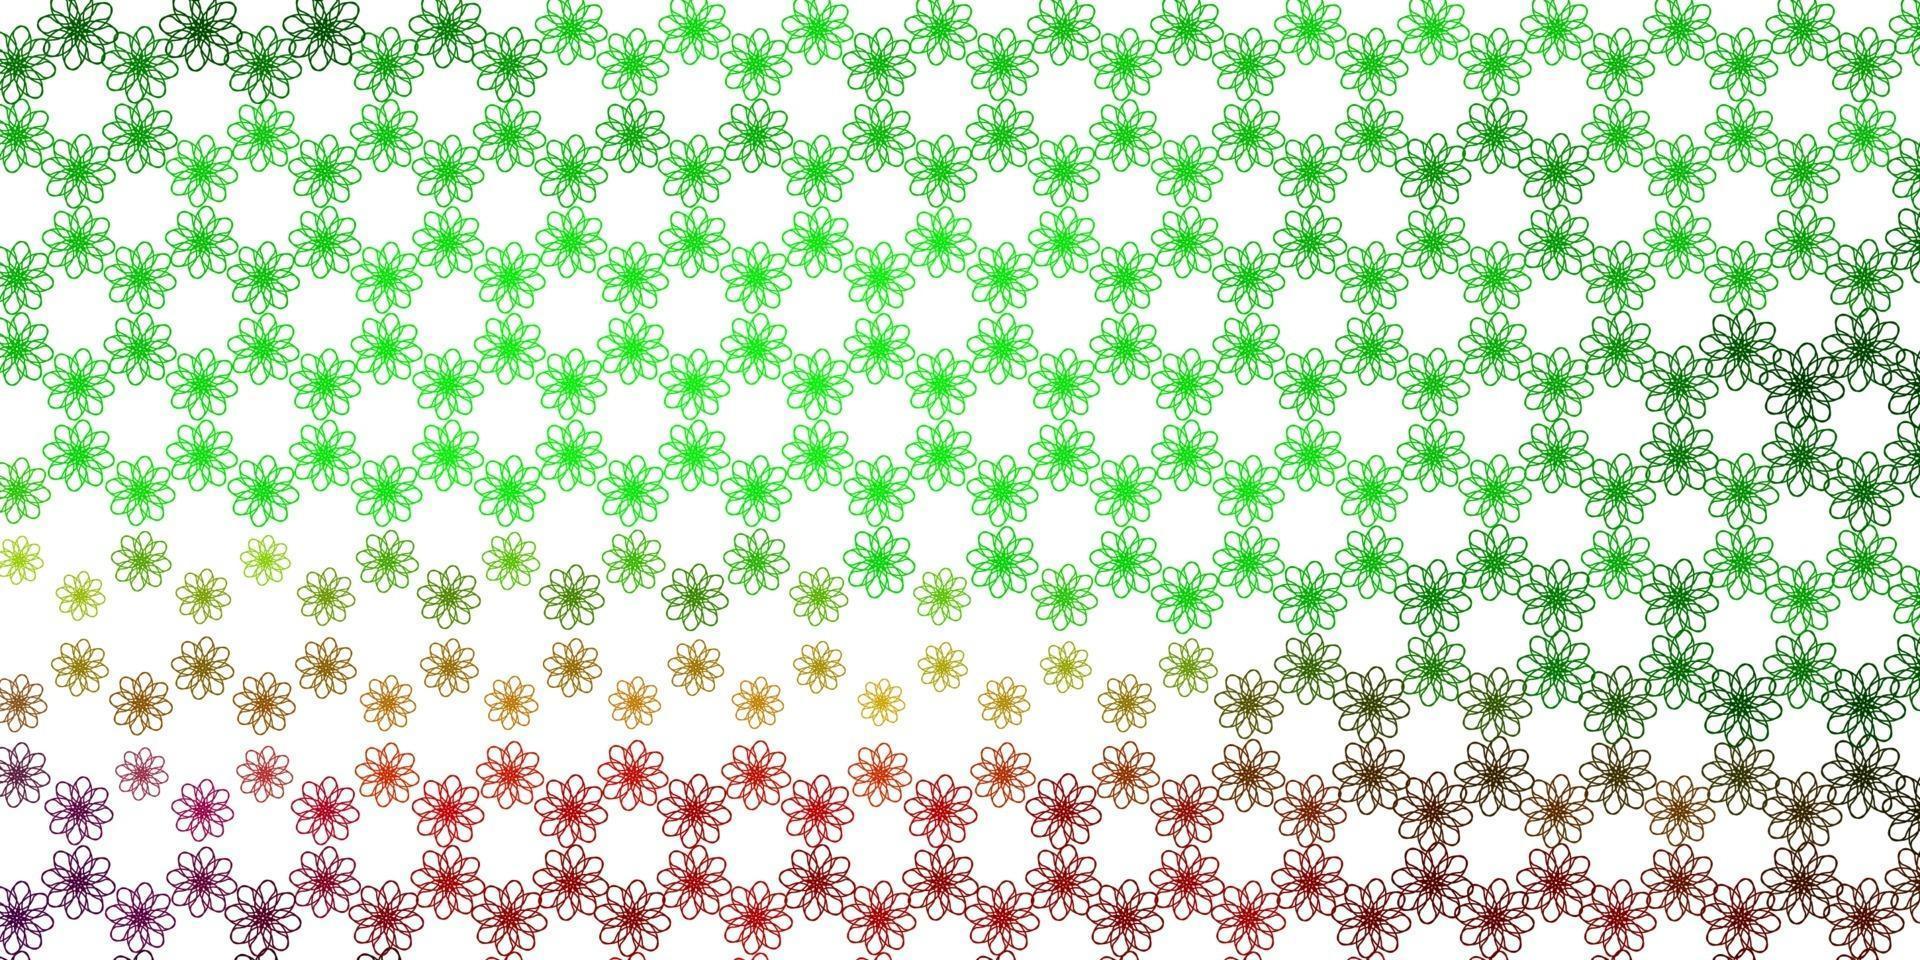 sfondo vettoriale verde chiaro, rosso con linee piegate.